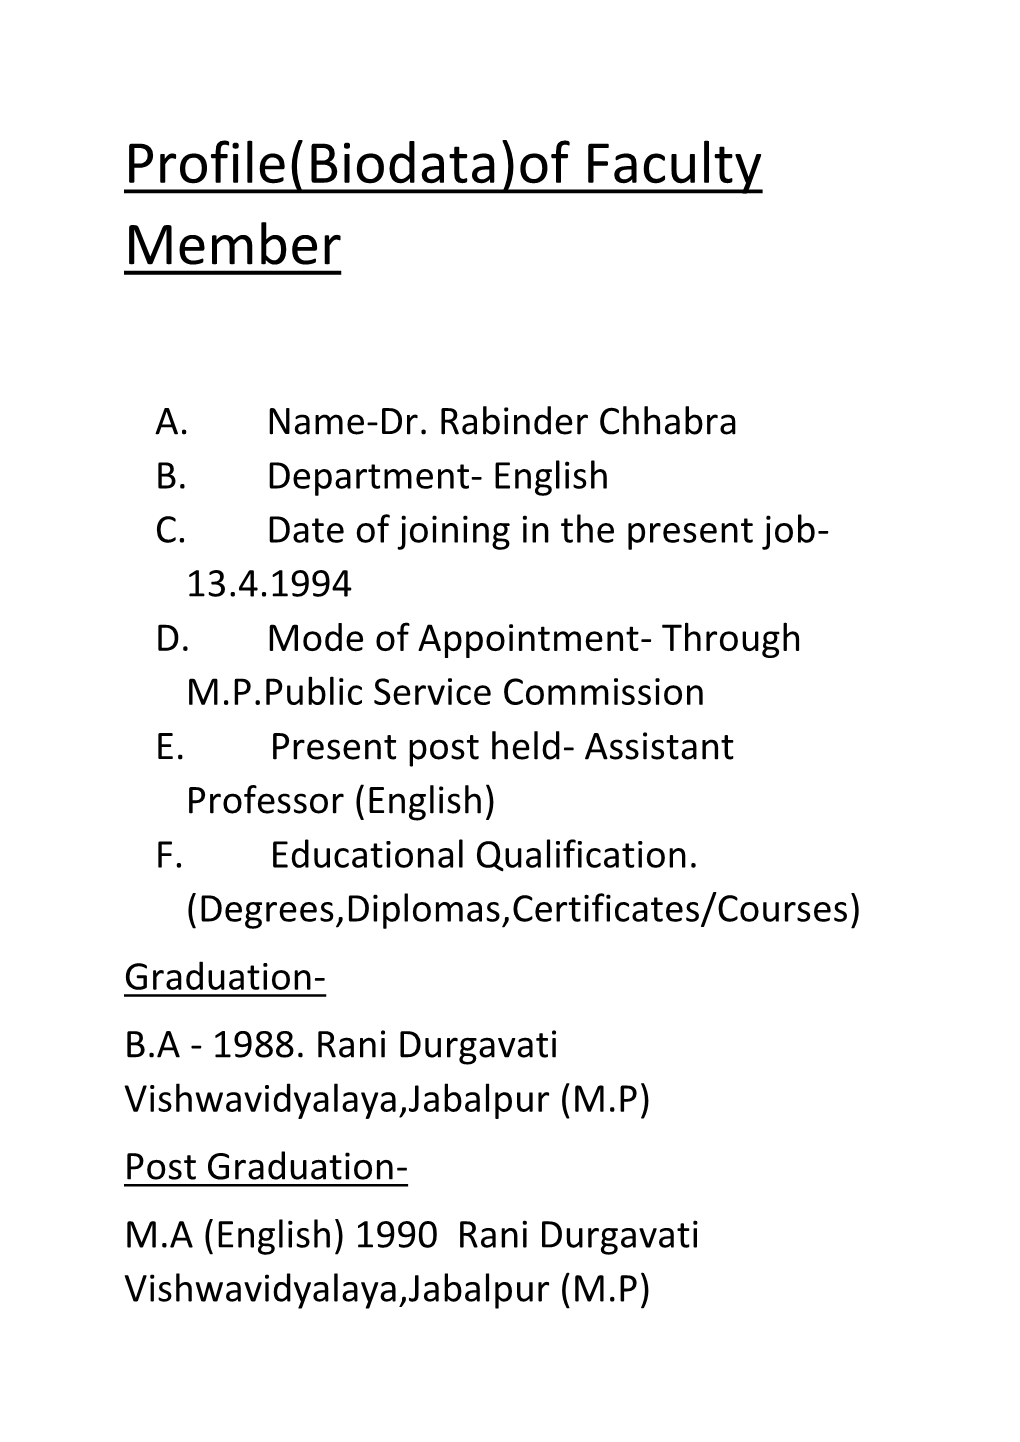 Profile(Biodata)Of Faculty Member